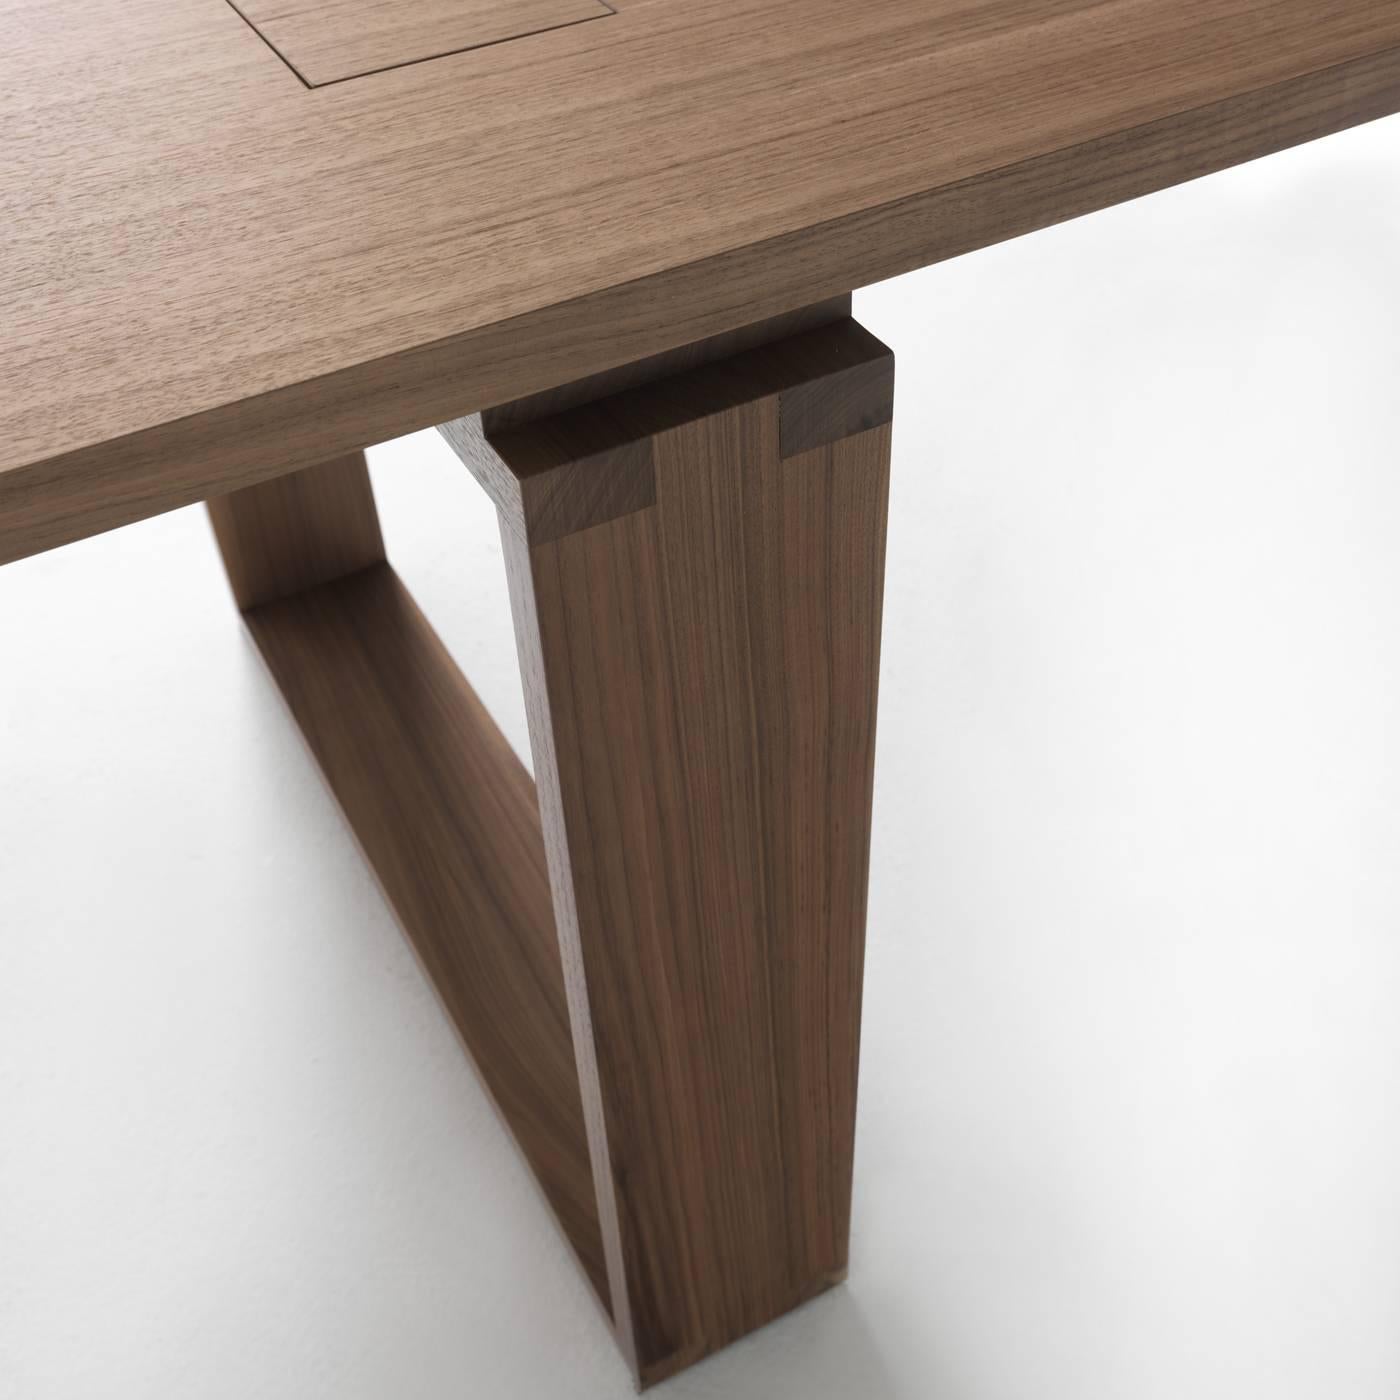 Italian Tata Wood Table For Sale